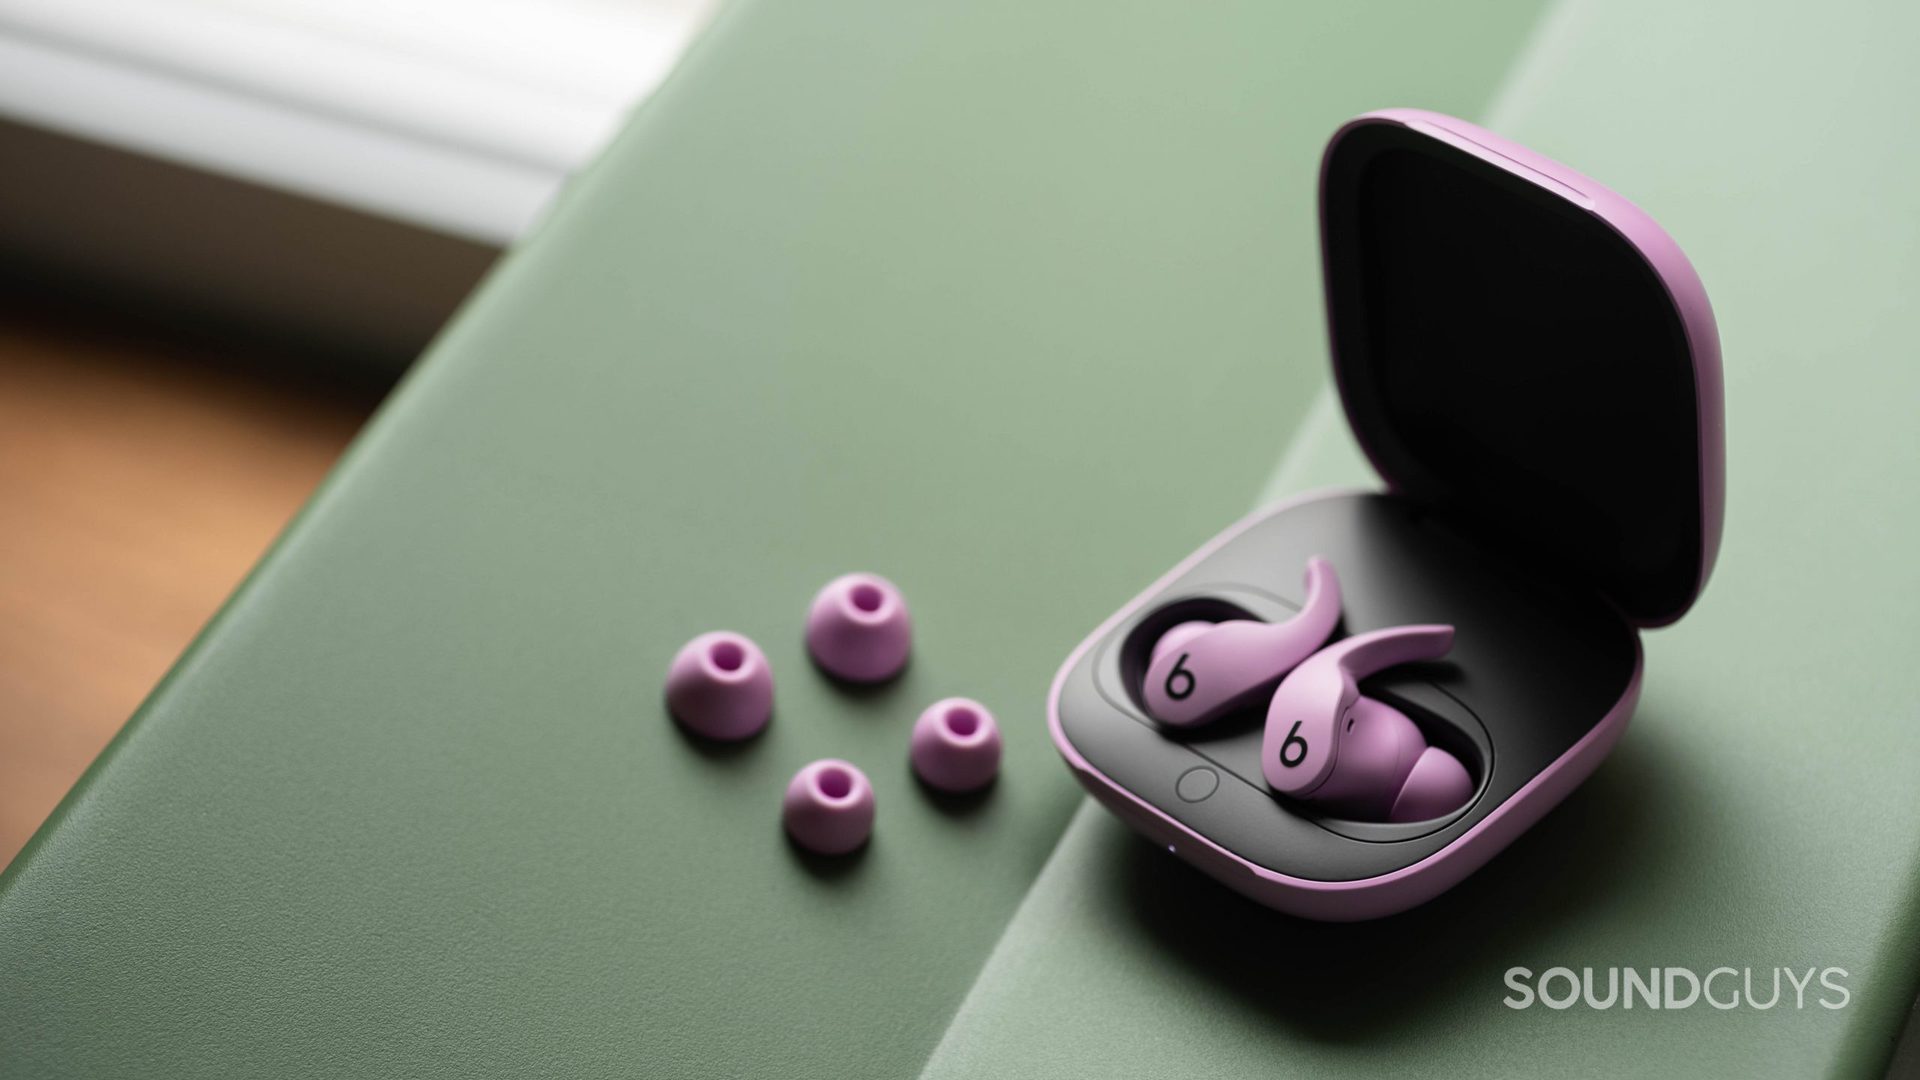 Audífonos inalámbricos verdaderos con cancelación de ruido Beats Fit Pro dentro del estuche, que muestran diferentes tamaños de almohadillas para los oídos.